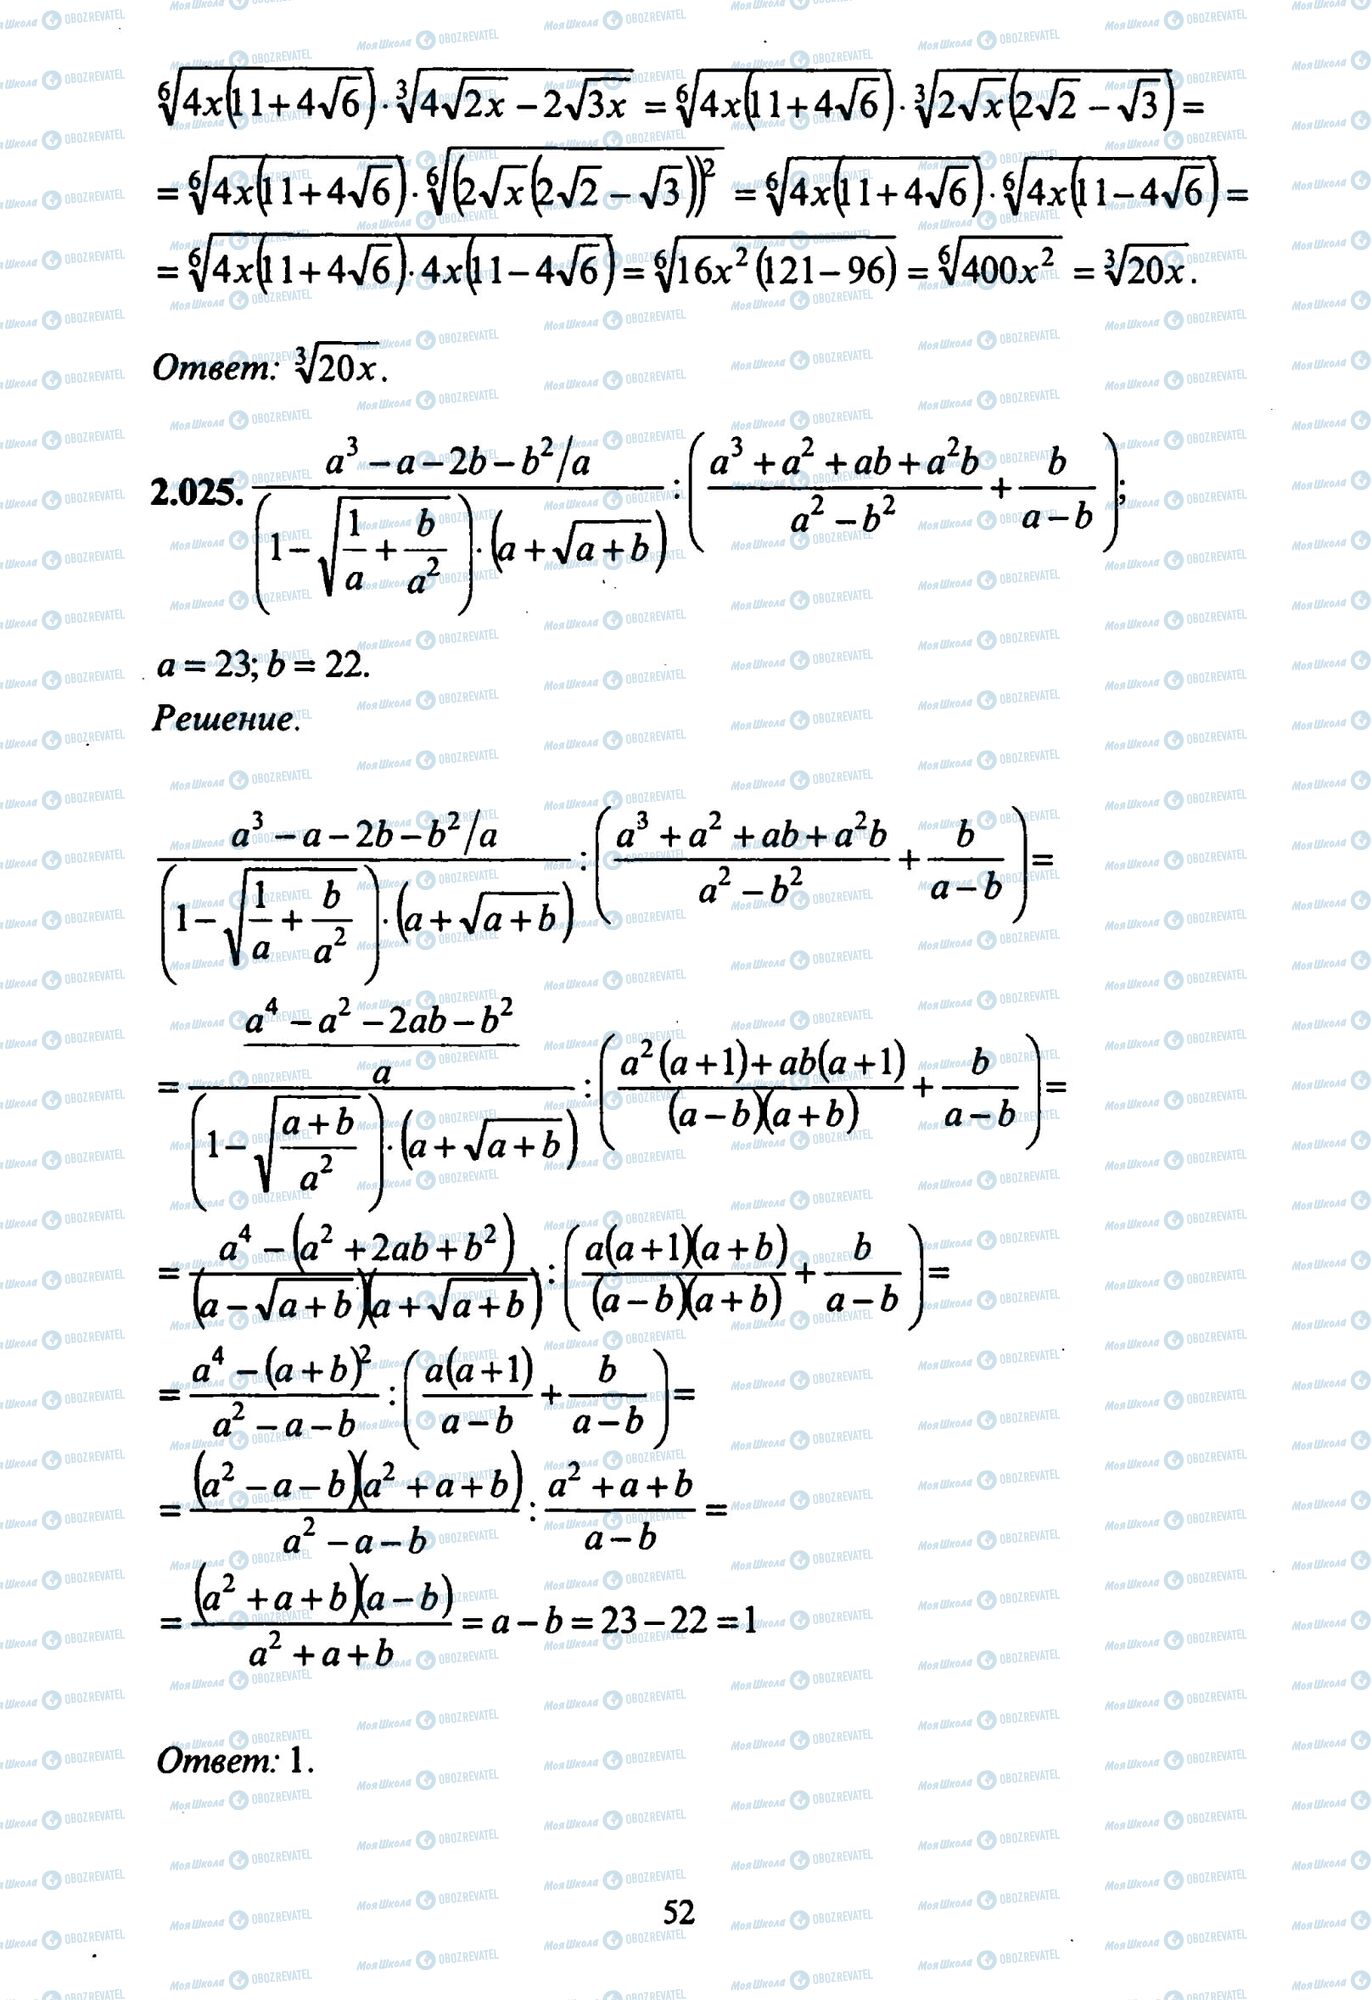 ЗНО Математика 11 клас сторінка 25